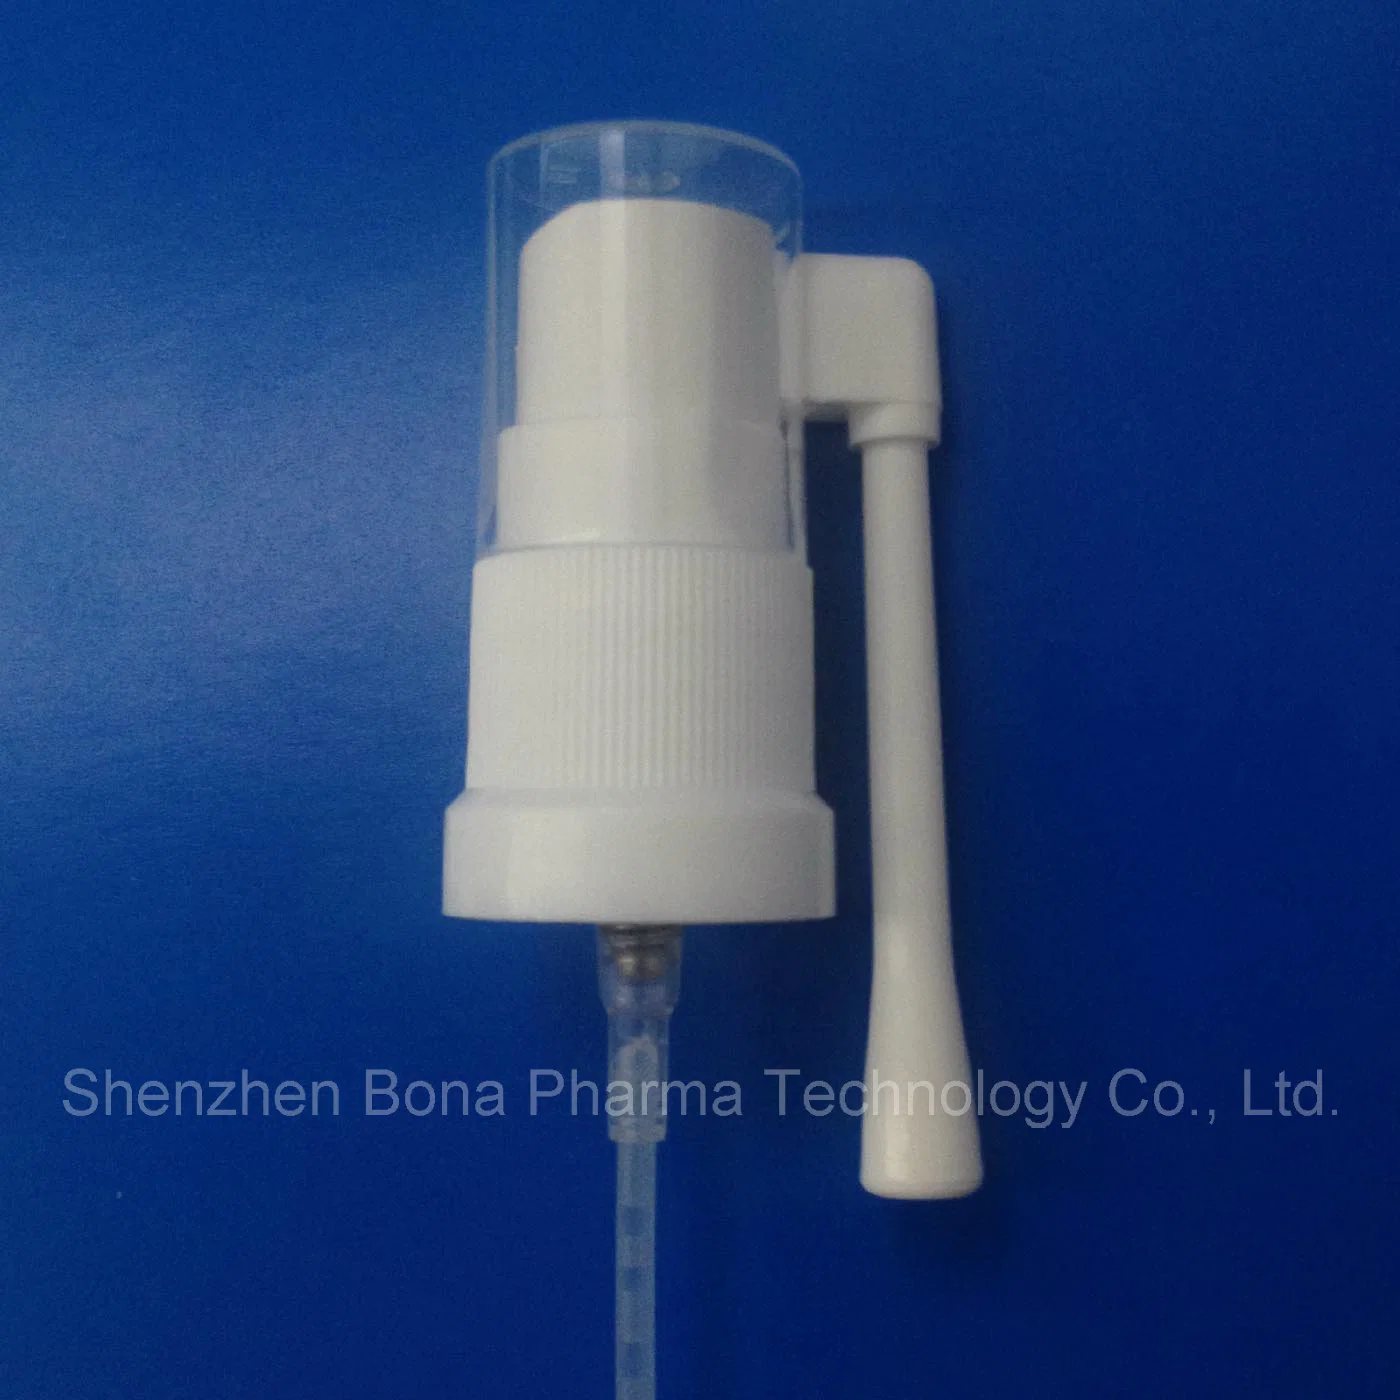 Válvula de pulverización oral con rotación de 360 grados y botella de HDPE